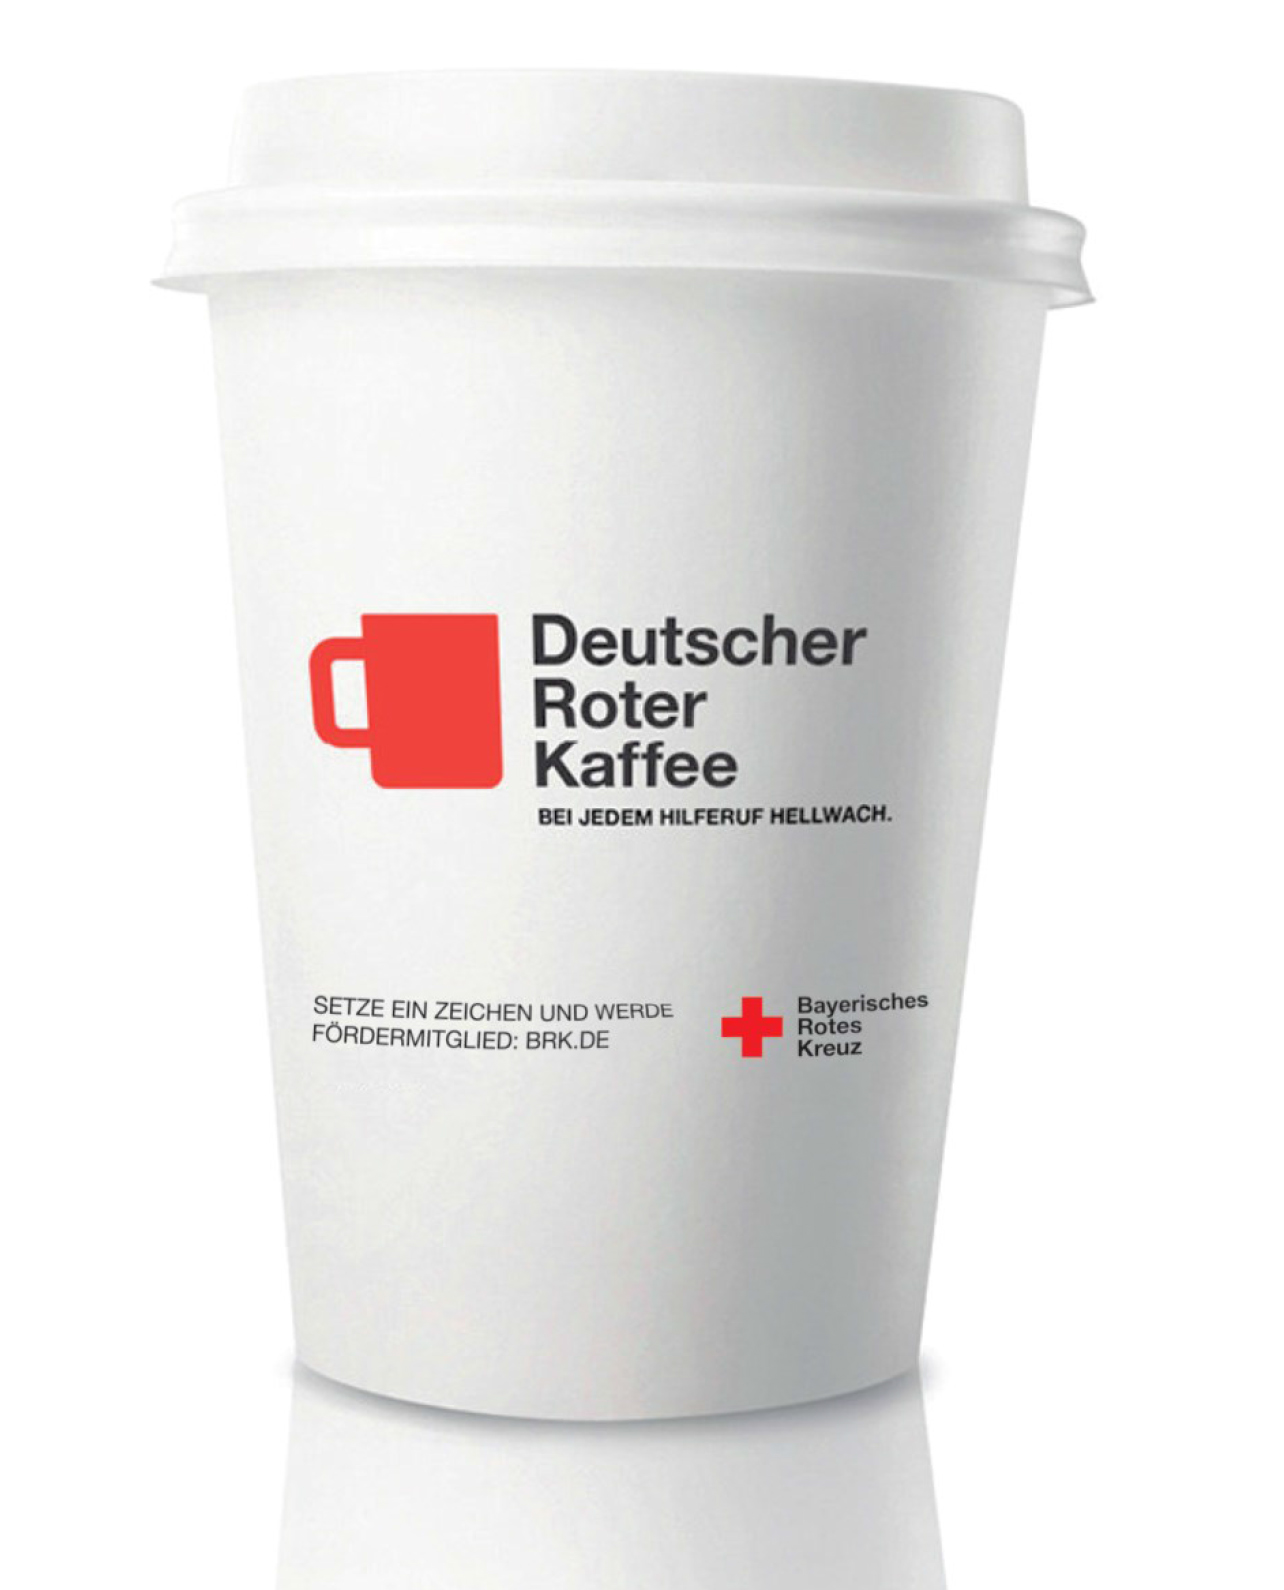 Bild zeigt Kampagnenmotiv: Kein kalter Kaffee